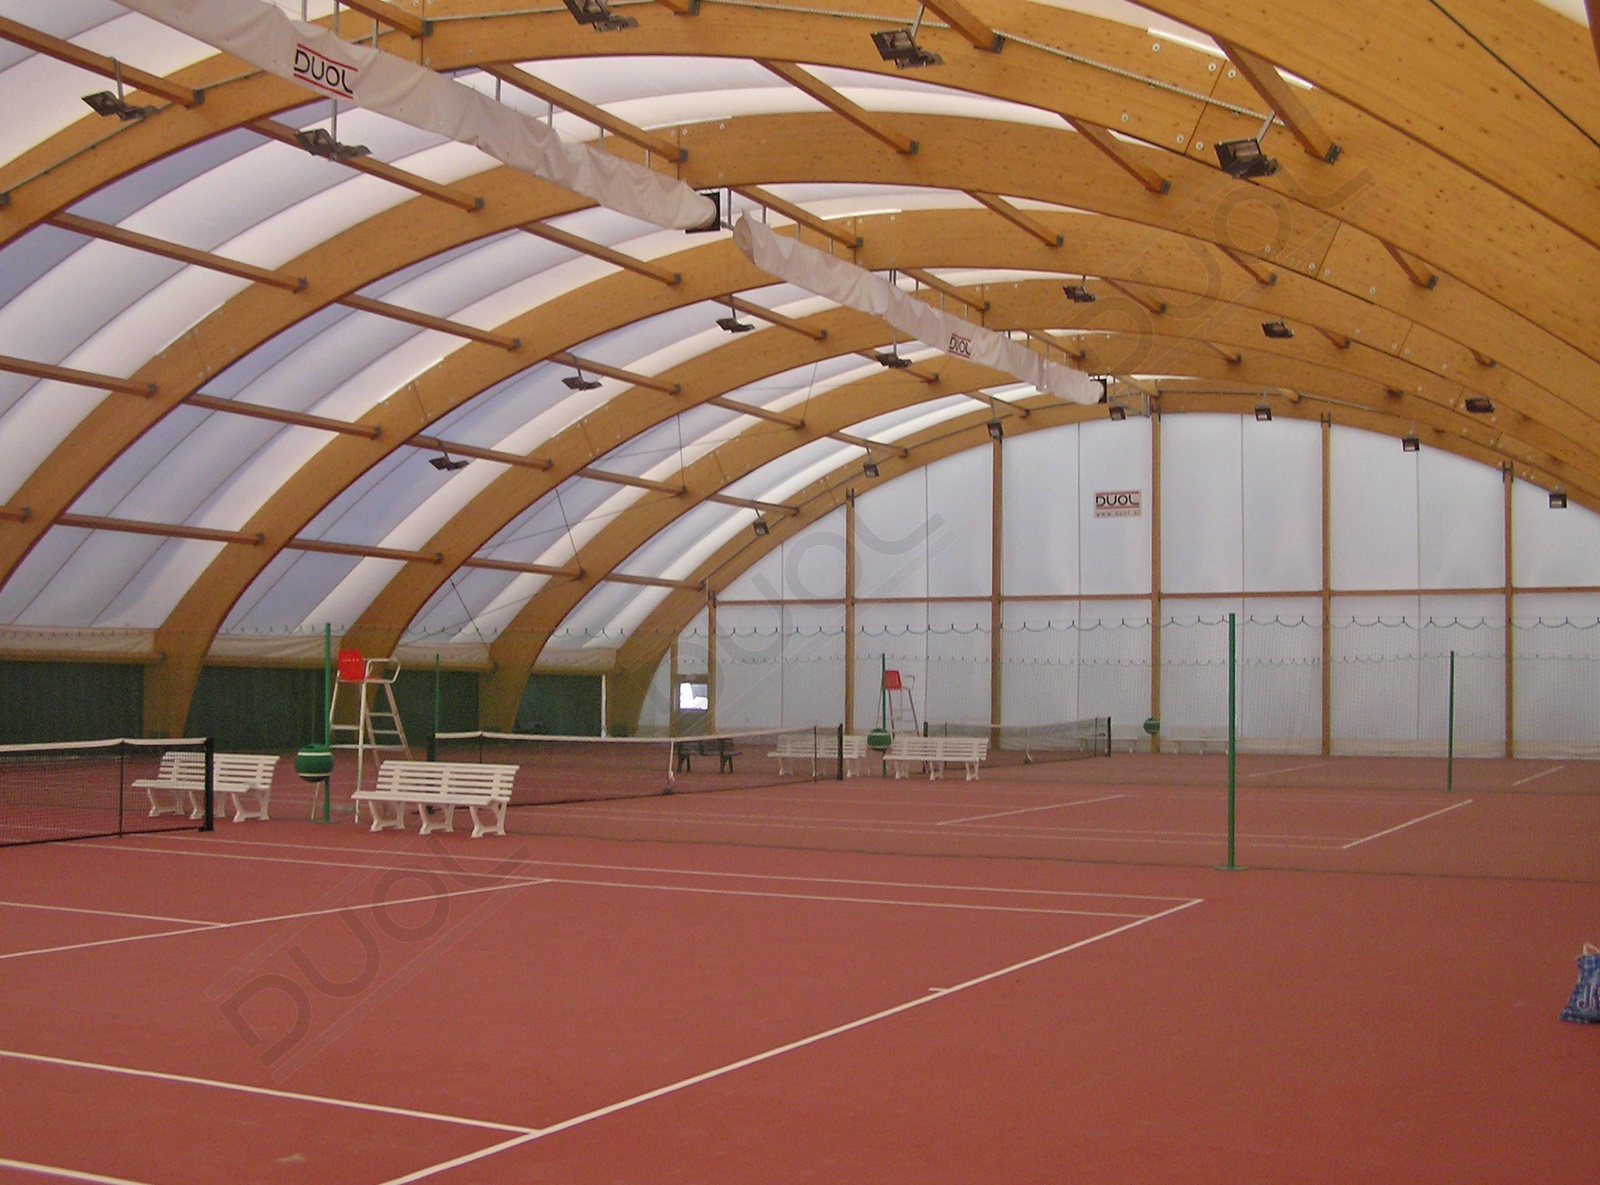 Теннисный корт под. Воздухоопорные сооружения duol. Воздухоопорный футбольный манеж. Теннисный корт воздухоопорный. Теннисный корт Сокольники деревянные конструкции.